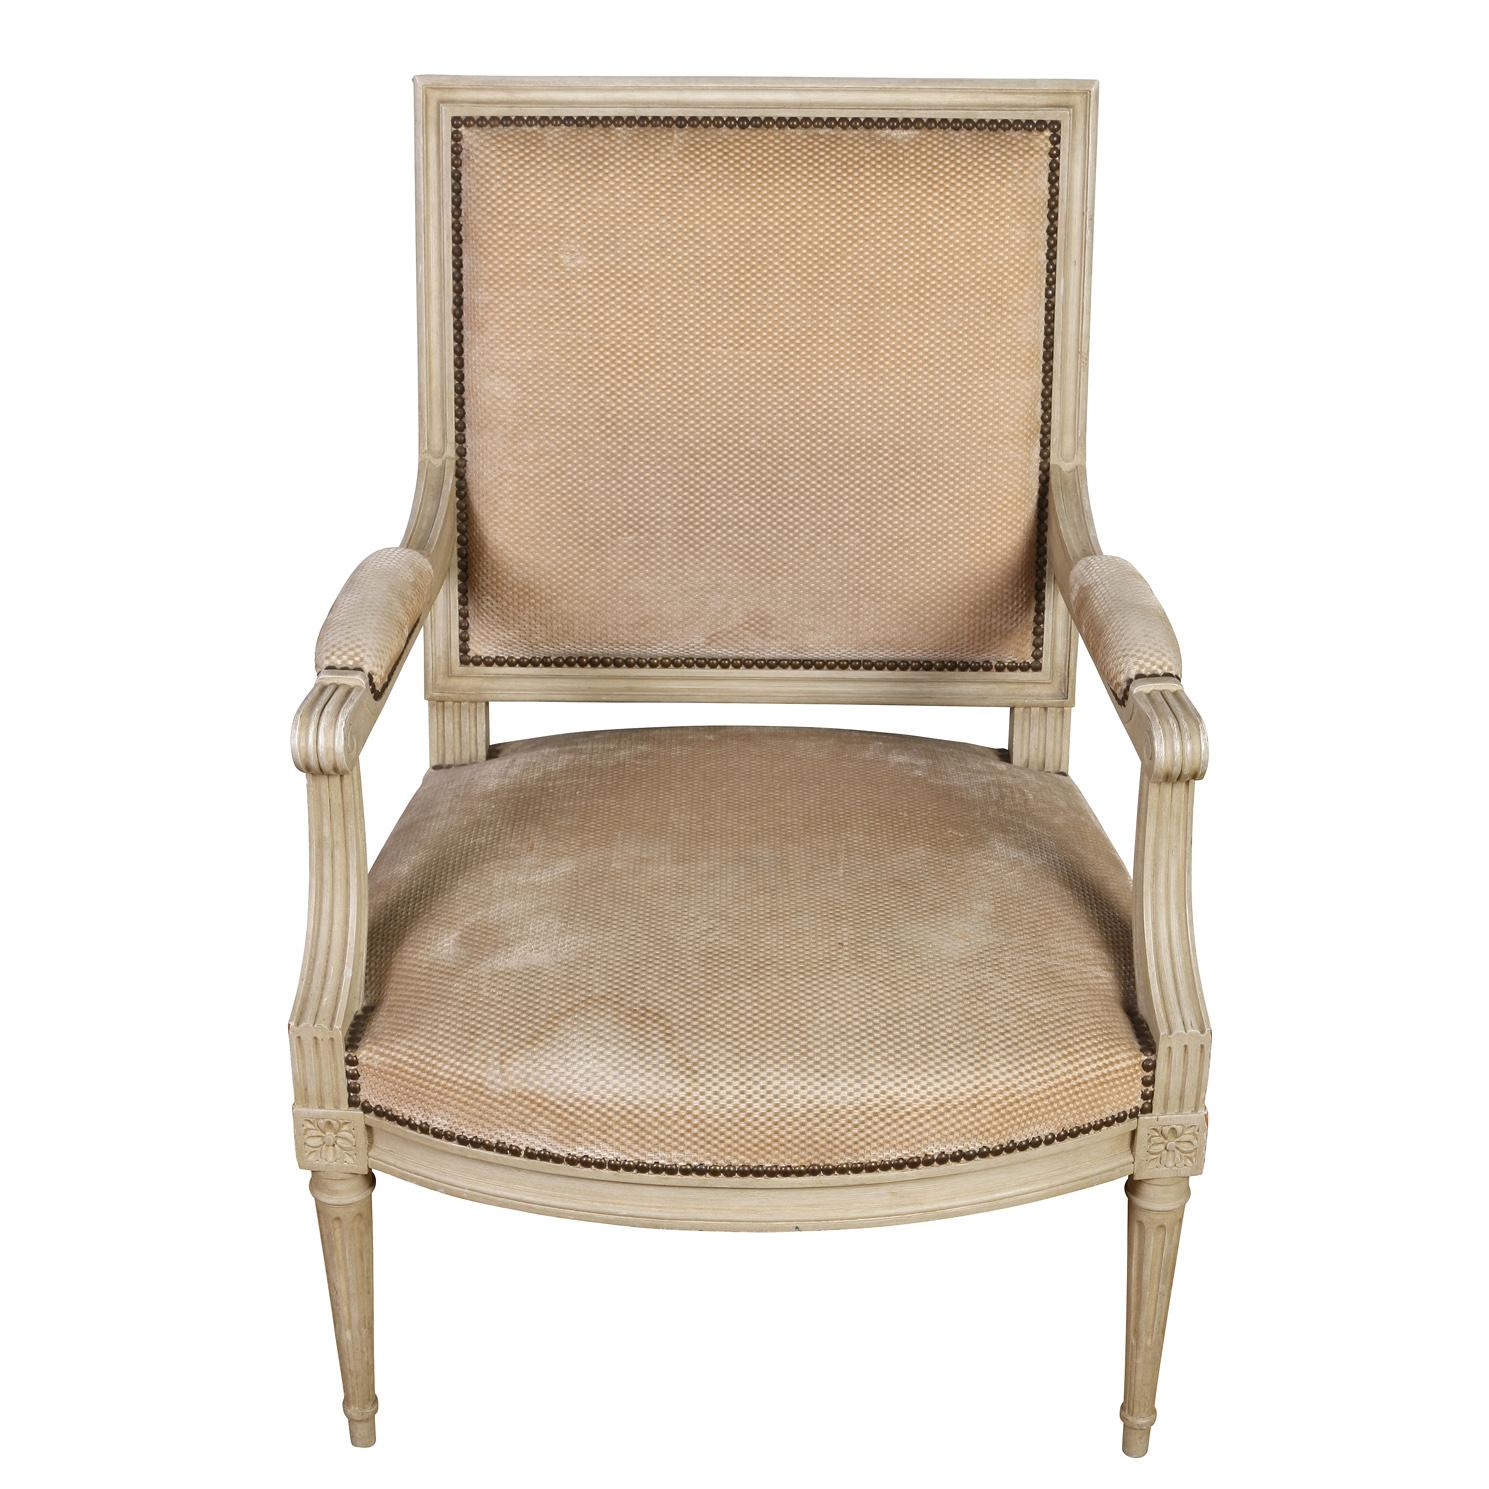 Paire de fauteuils français surdimensionnés et peints, vers 1940.  La paire de chaises Louis XVI est peinte en blanc cassé, avec un dossier carré, un cadre cannelé et sculpté, des accoudoirs et des pieds fuselés.  Chaque pied rejoint le cadre de